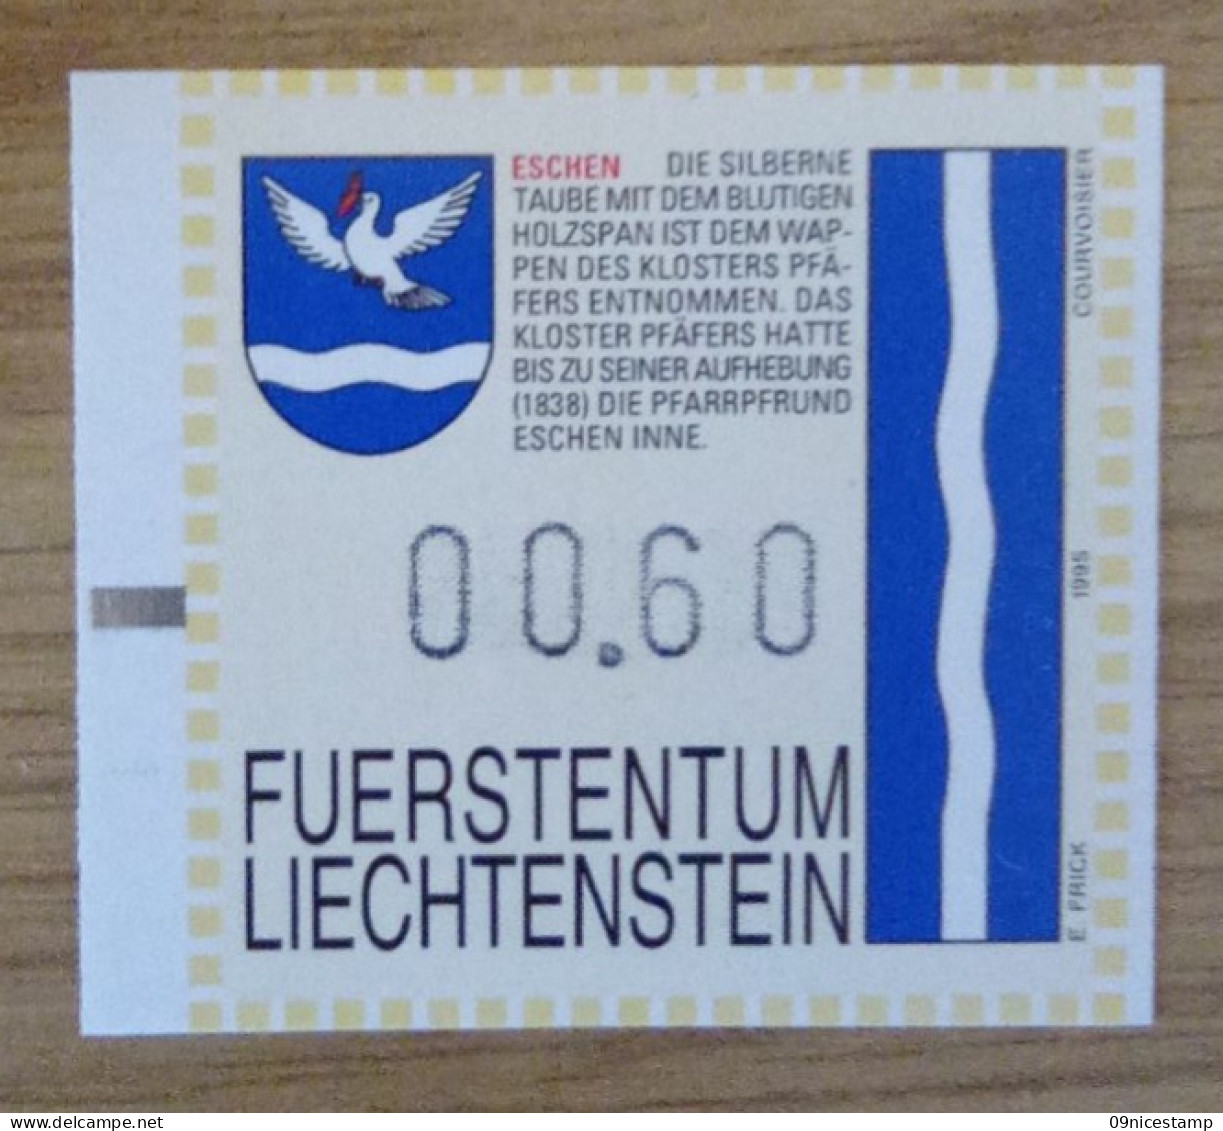 Liechtenstein, Slotmachine - Automatenmarken [ATM]